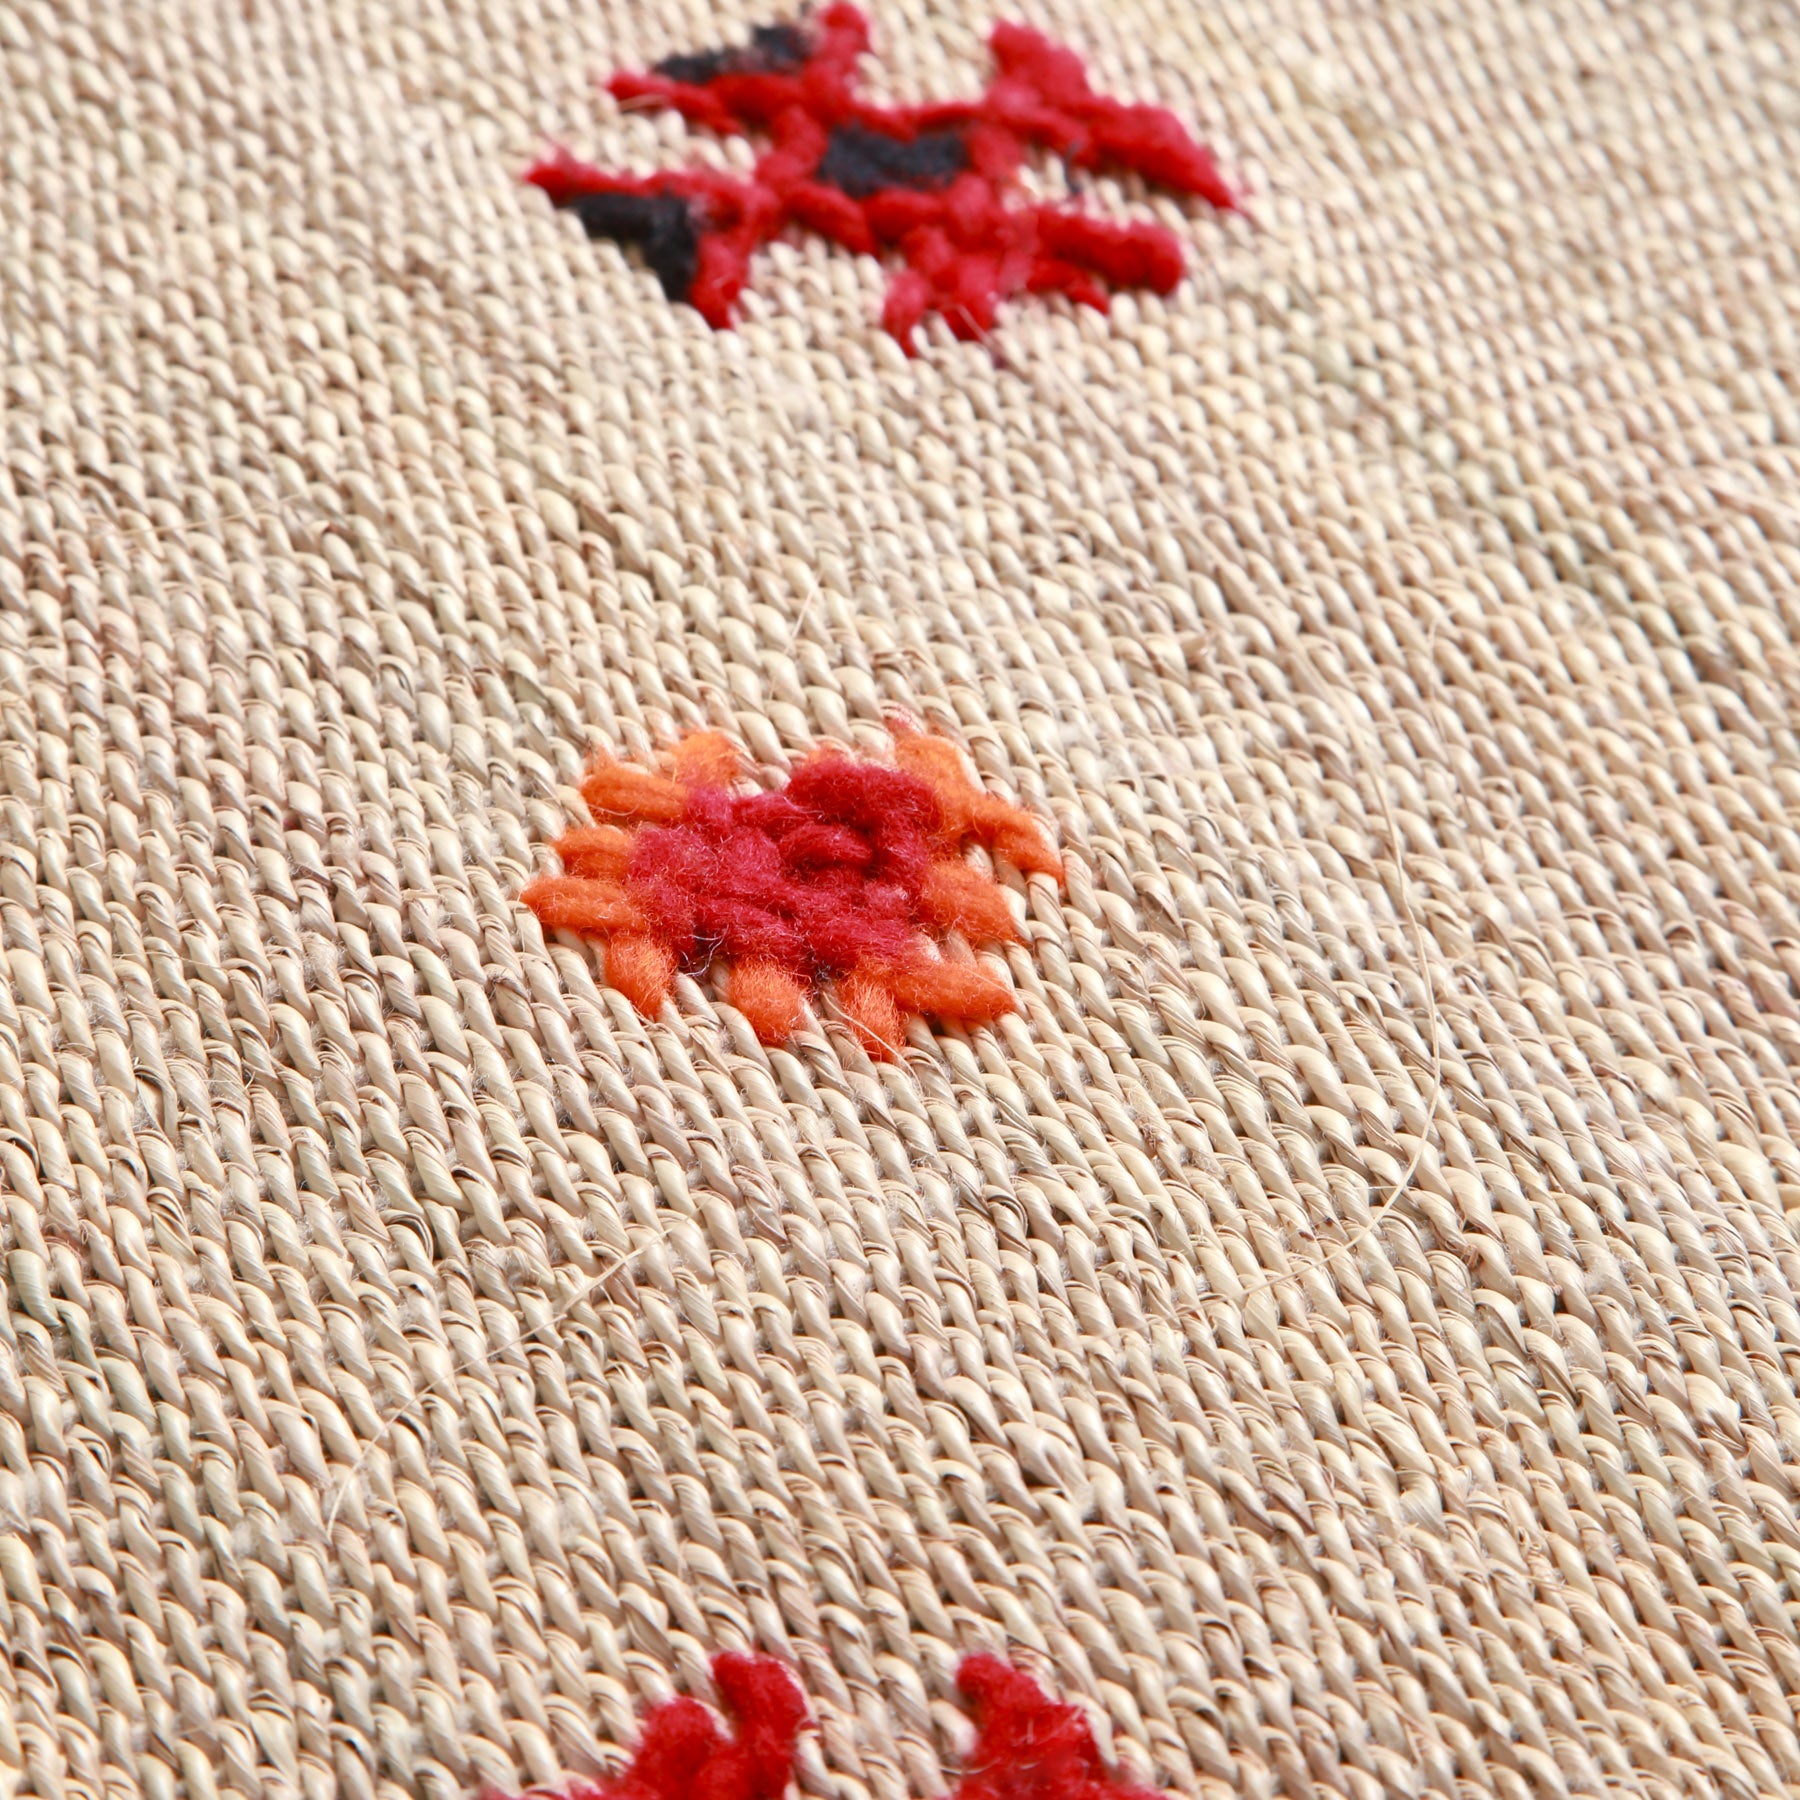 dettaglio della lana e della paglia tessuta su una stuoia